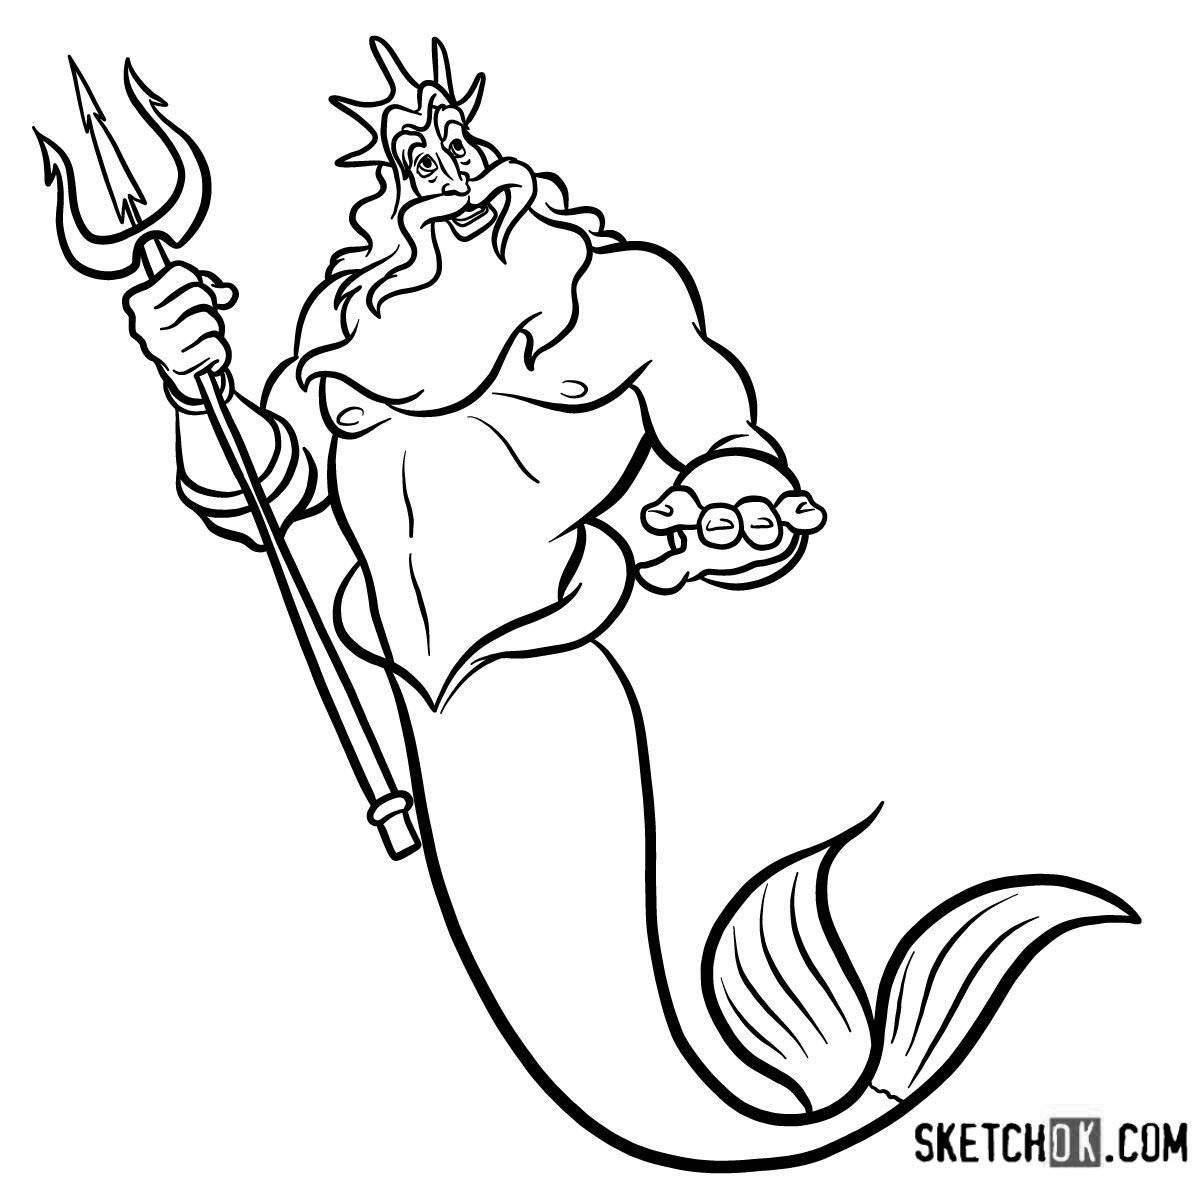 Shiny Poseidon coloring book